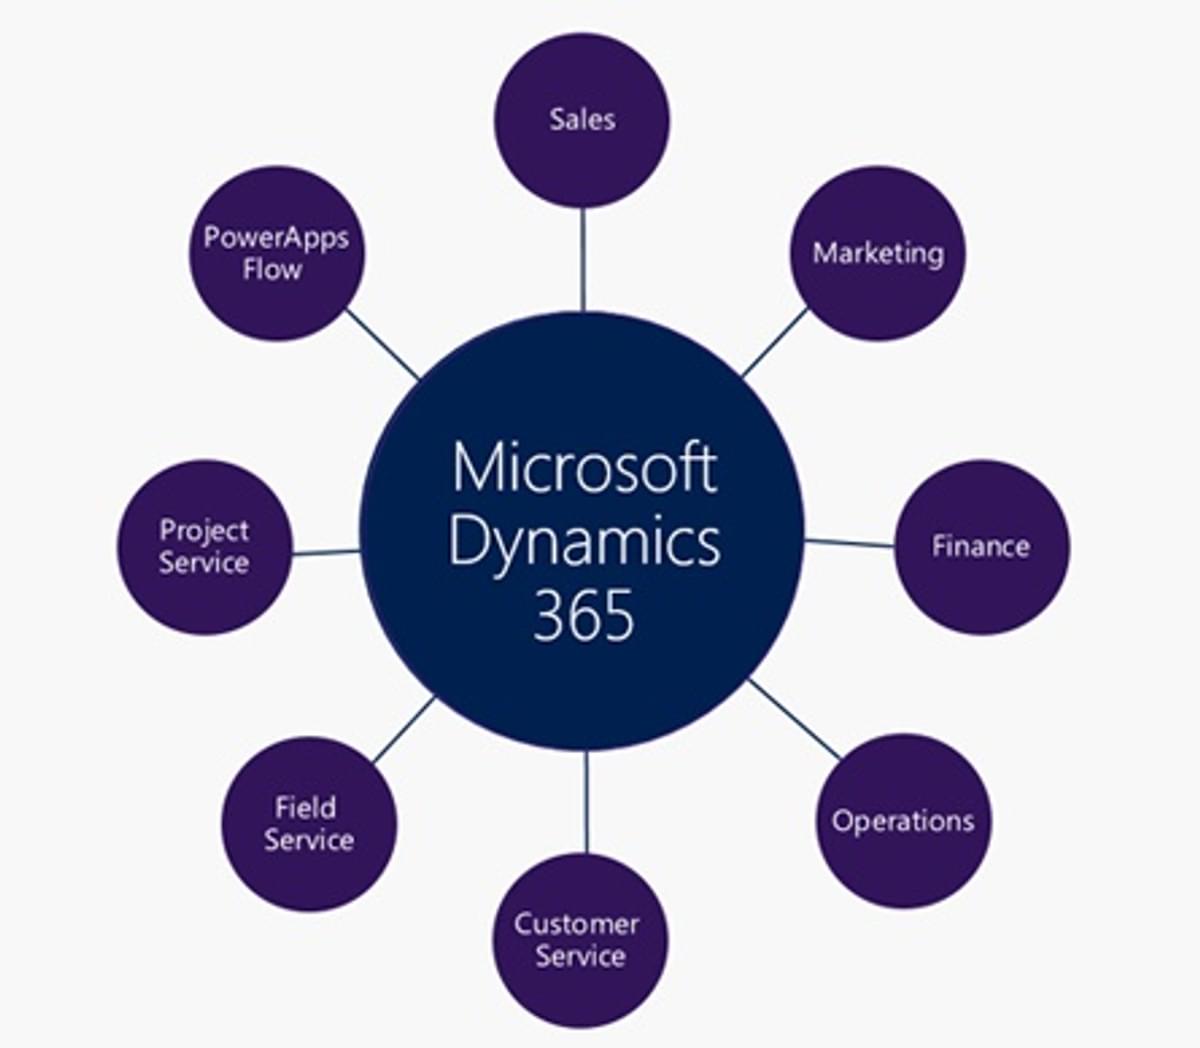 Voorspel en begrijp de klantbehoefte met Dynamics 365 en cognitieve services | Microsoft image